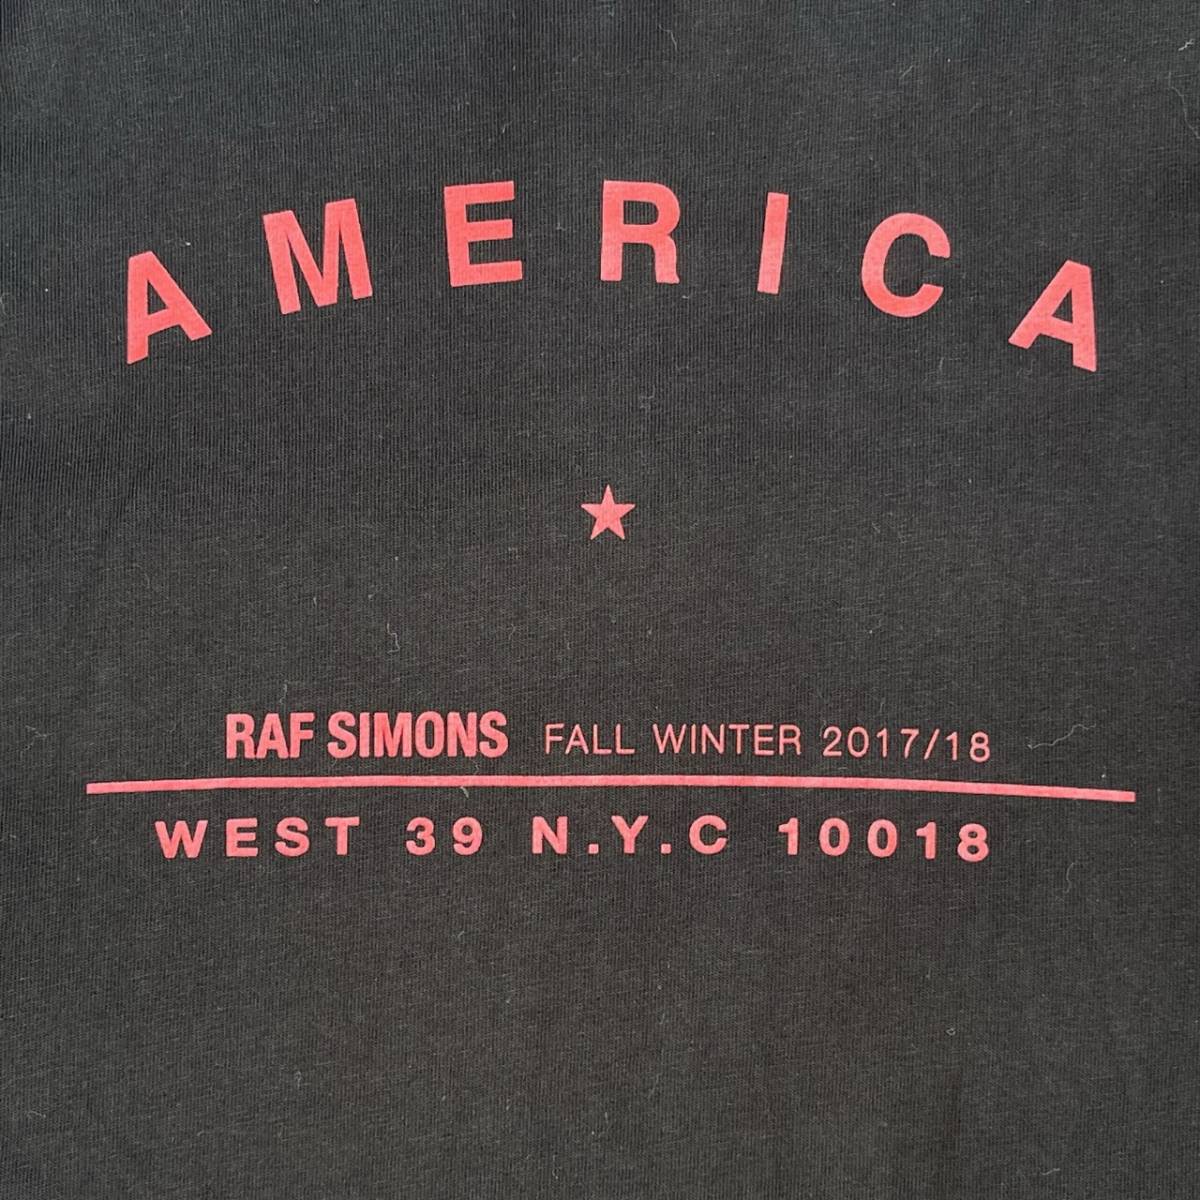 RAF SIMONS ラフシモンズ XSサイズ TOUR CREWNECK ツアークルーネック Tシャツ ブラック